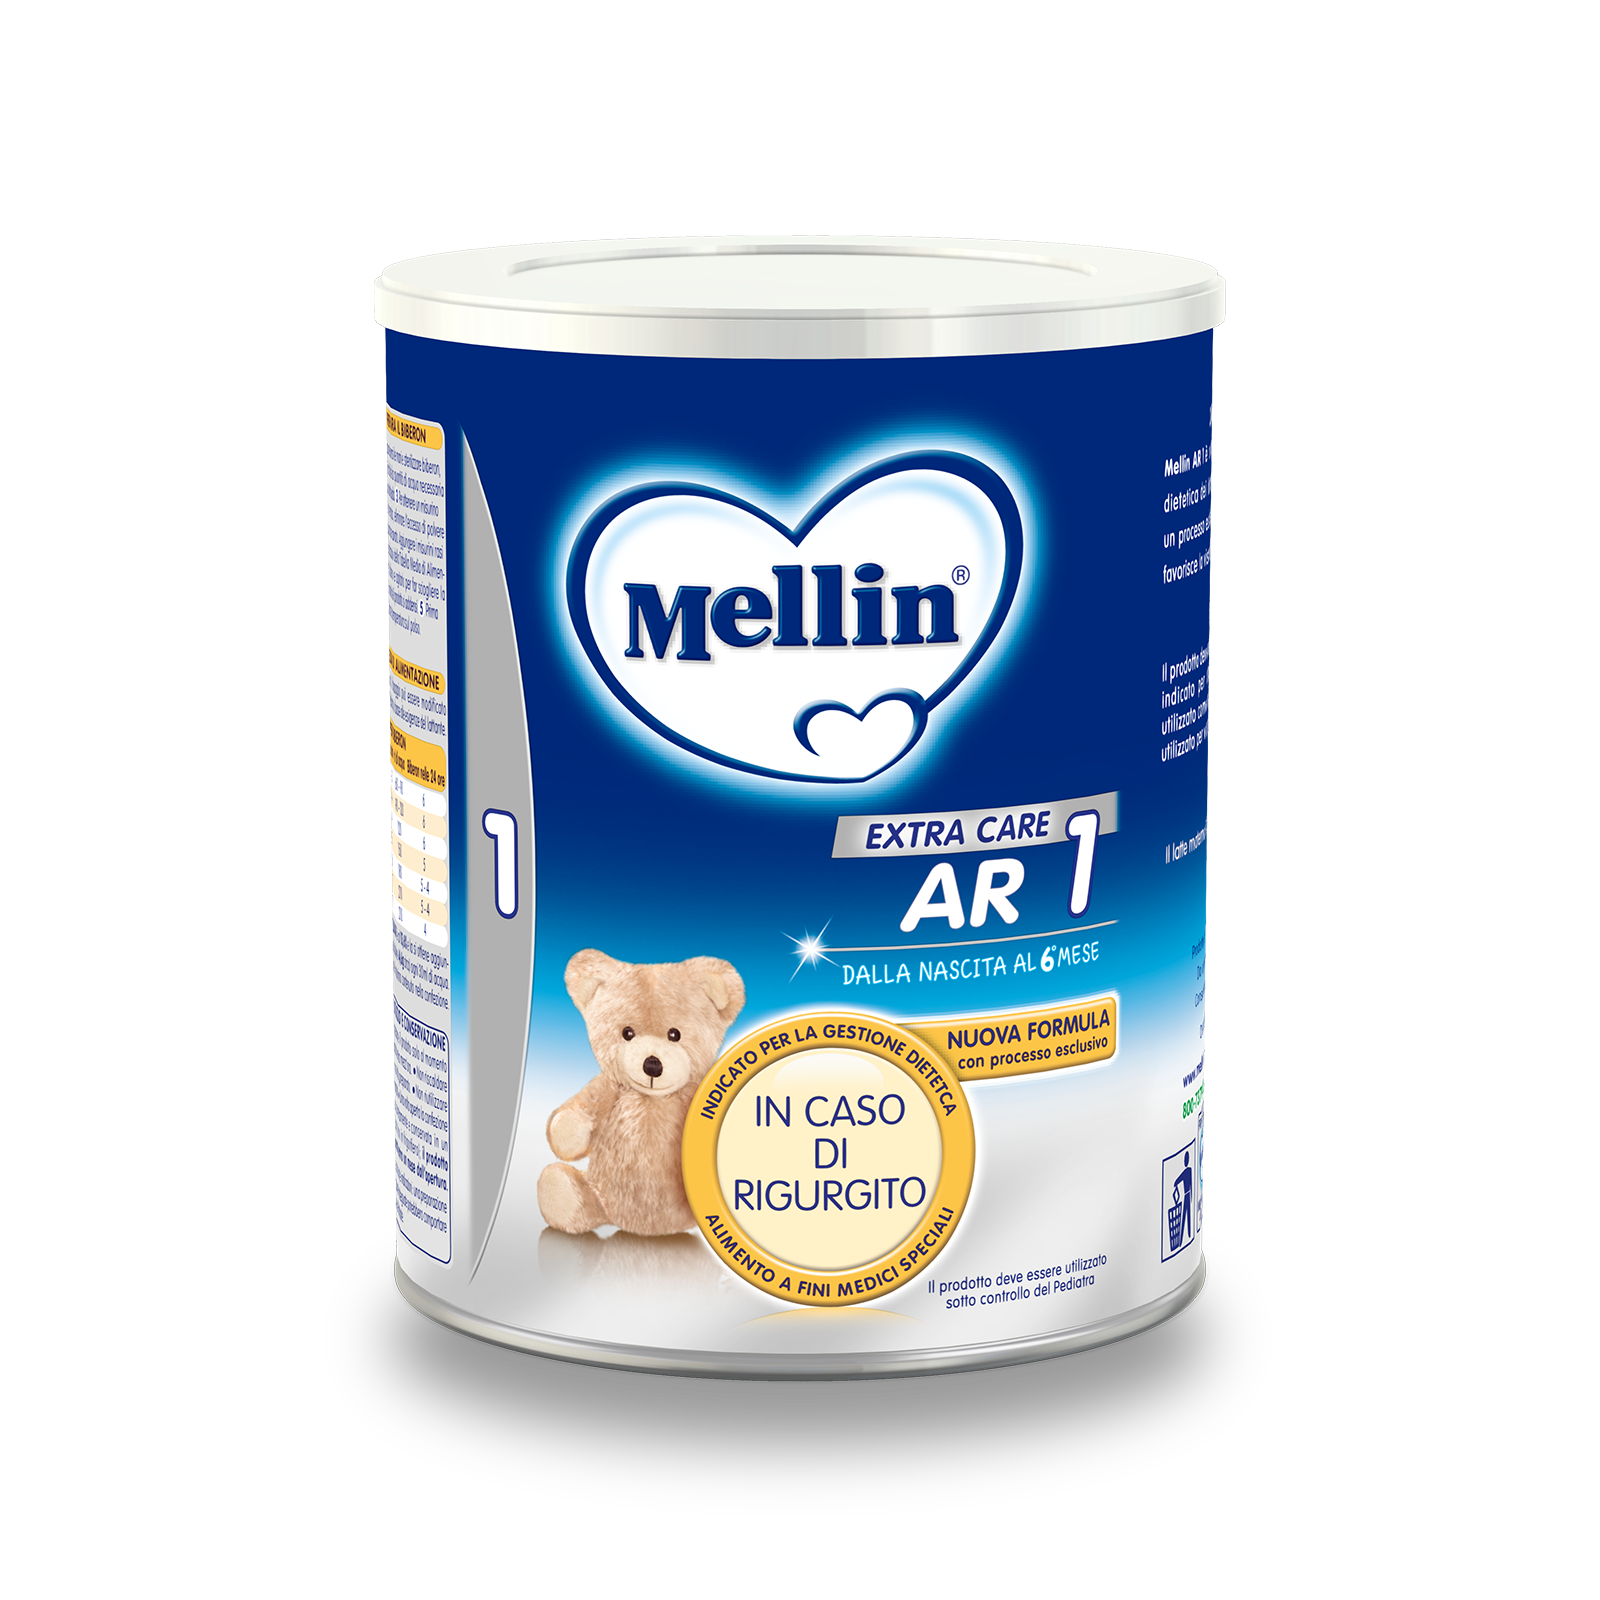 Mellin AR 1 1 confezione da 400 g | Mellin